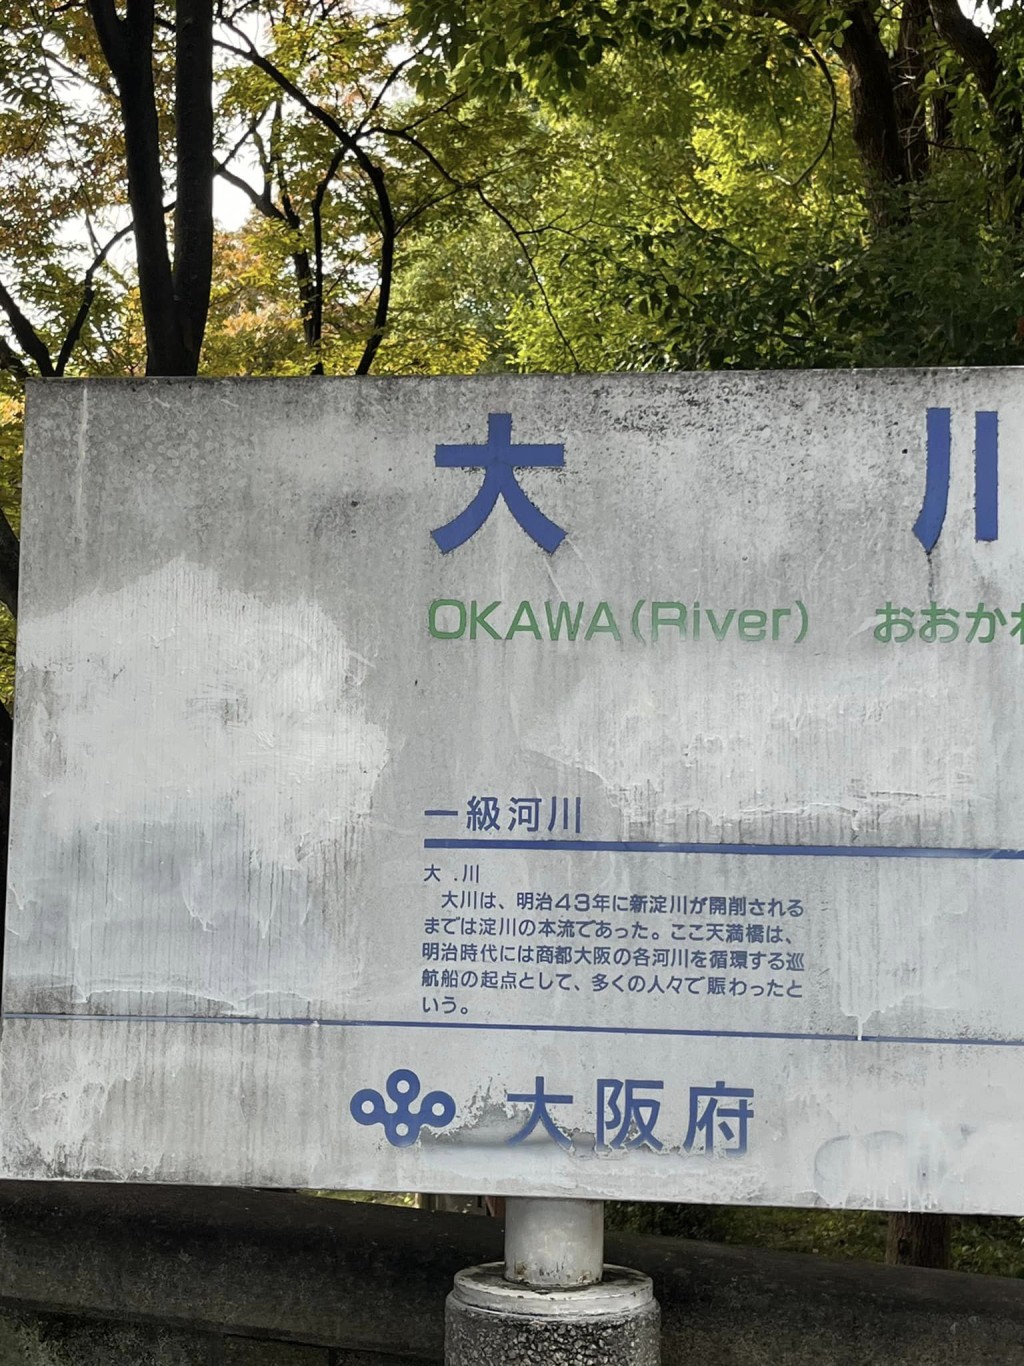 大阪的河流、土壞及地下水，疑受到PFOA污染。FB